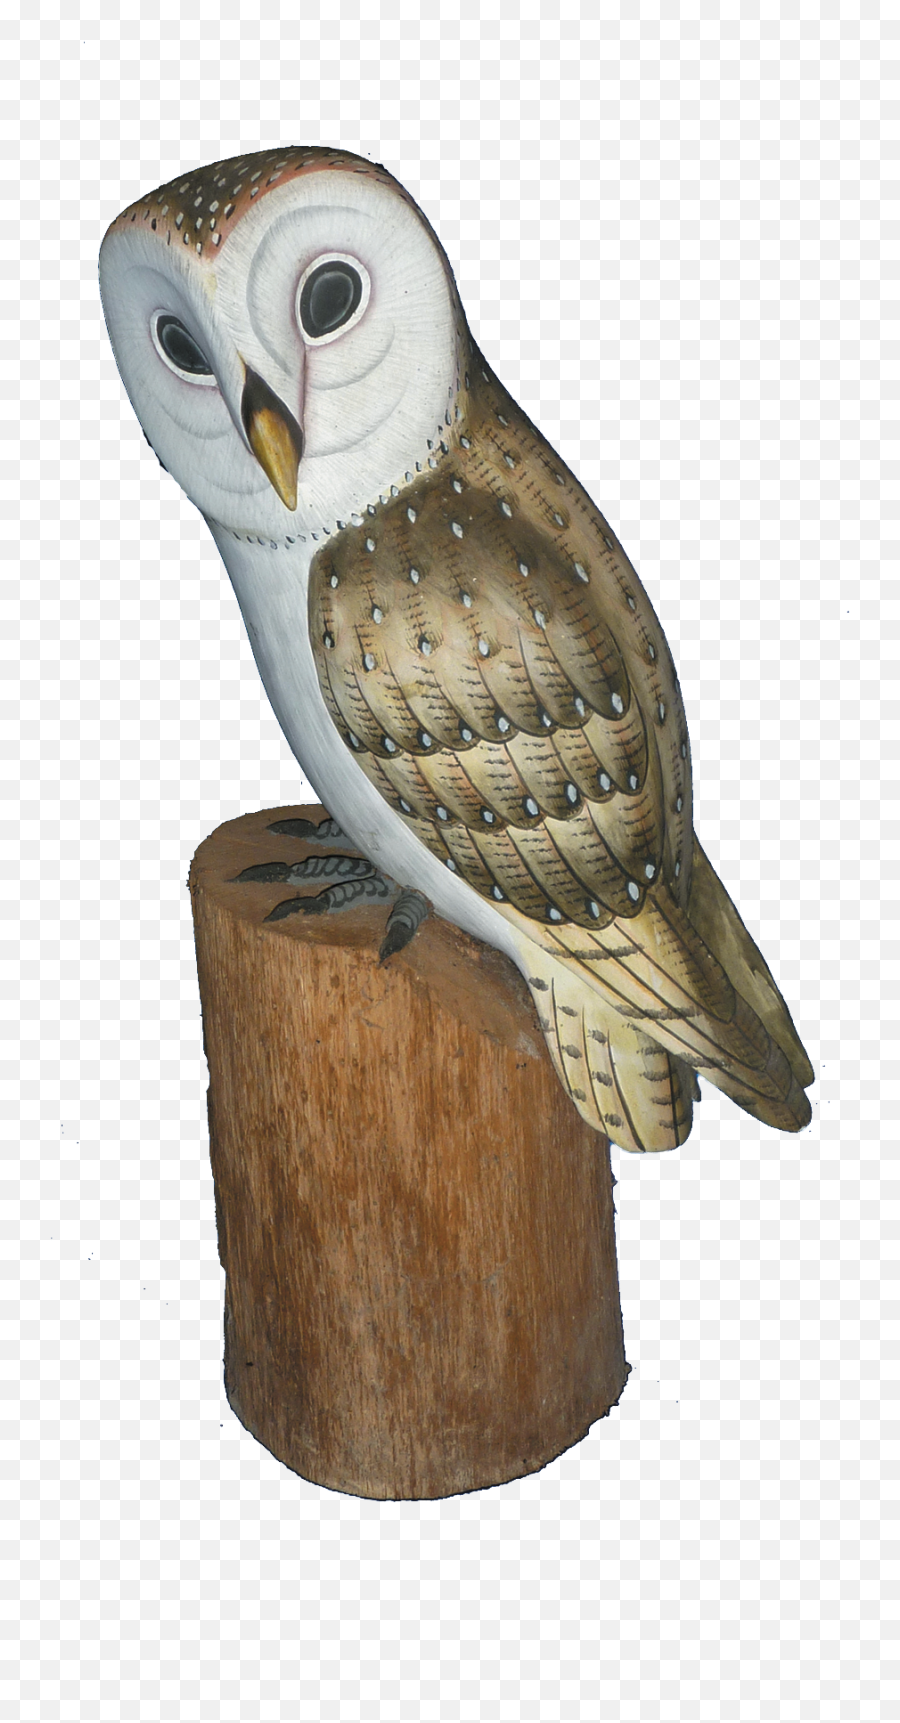 Barn Owl Png Image - Barn Owl,Barn Owl Png